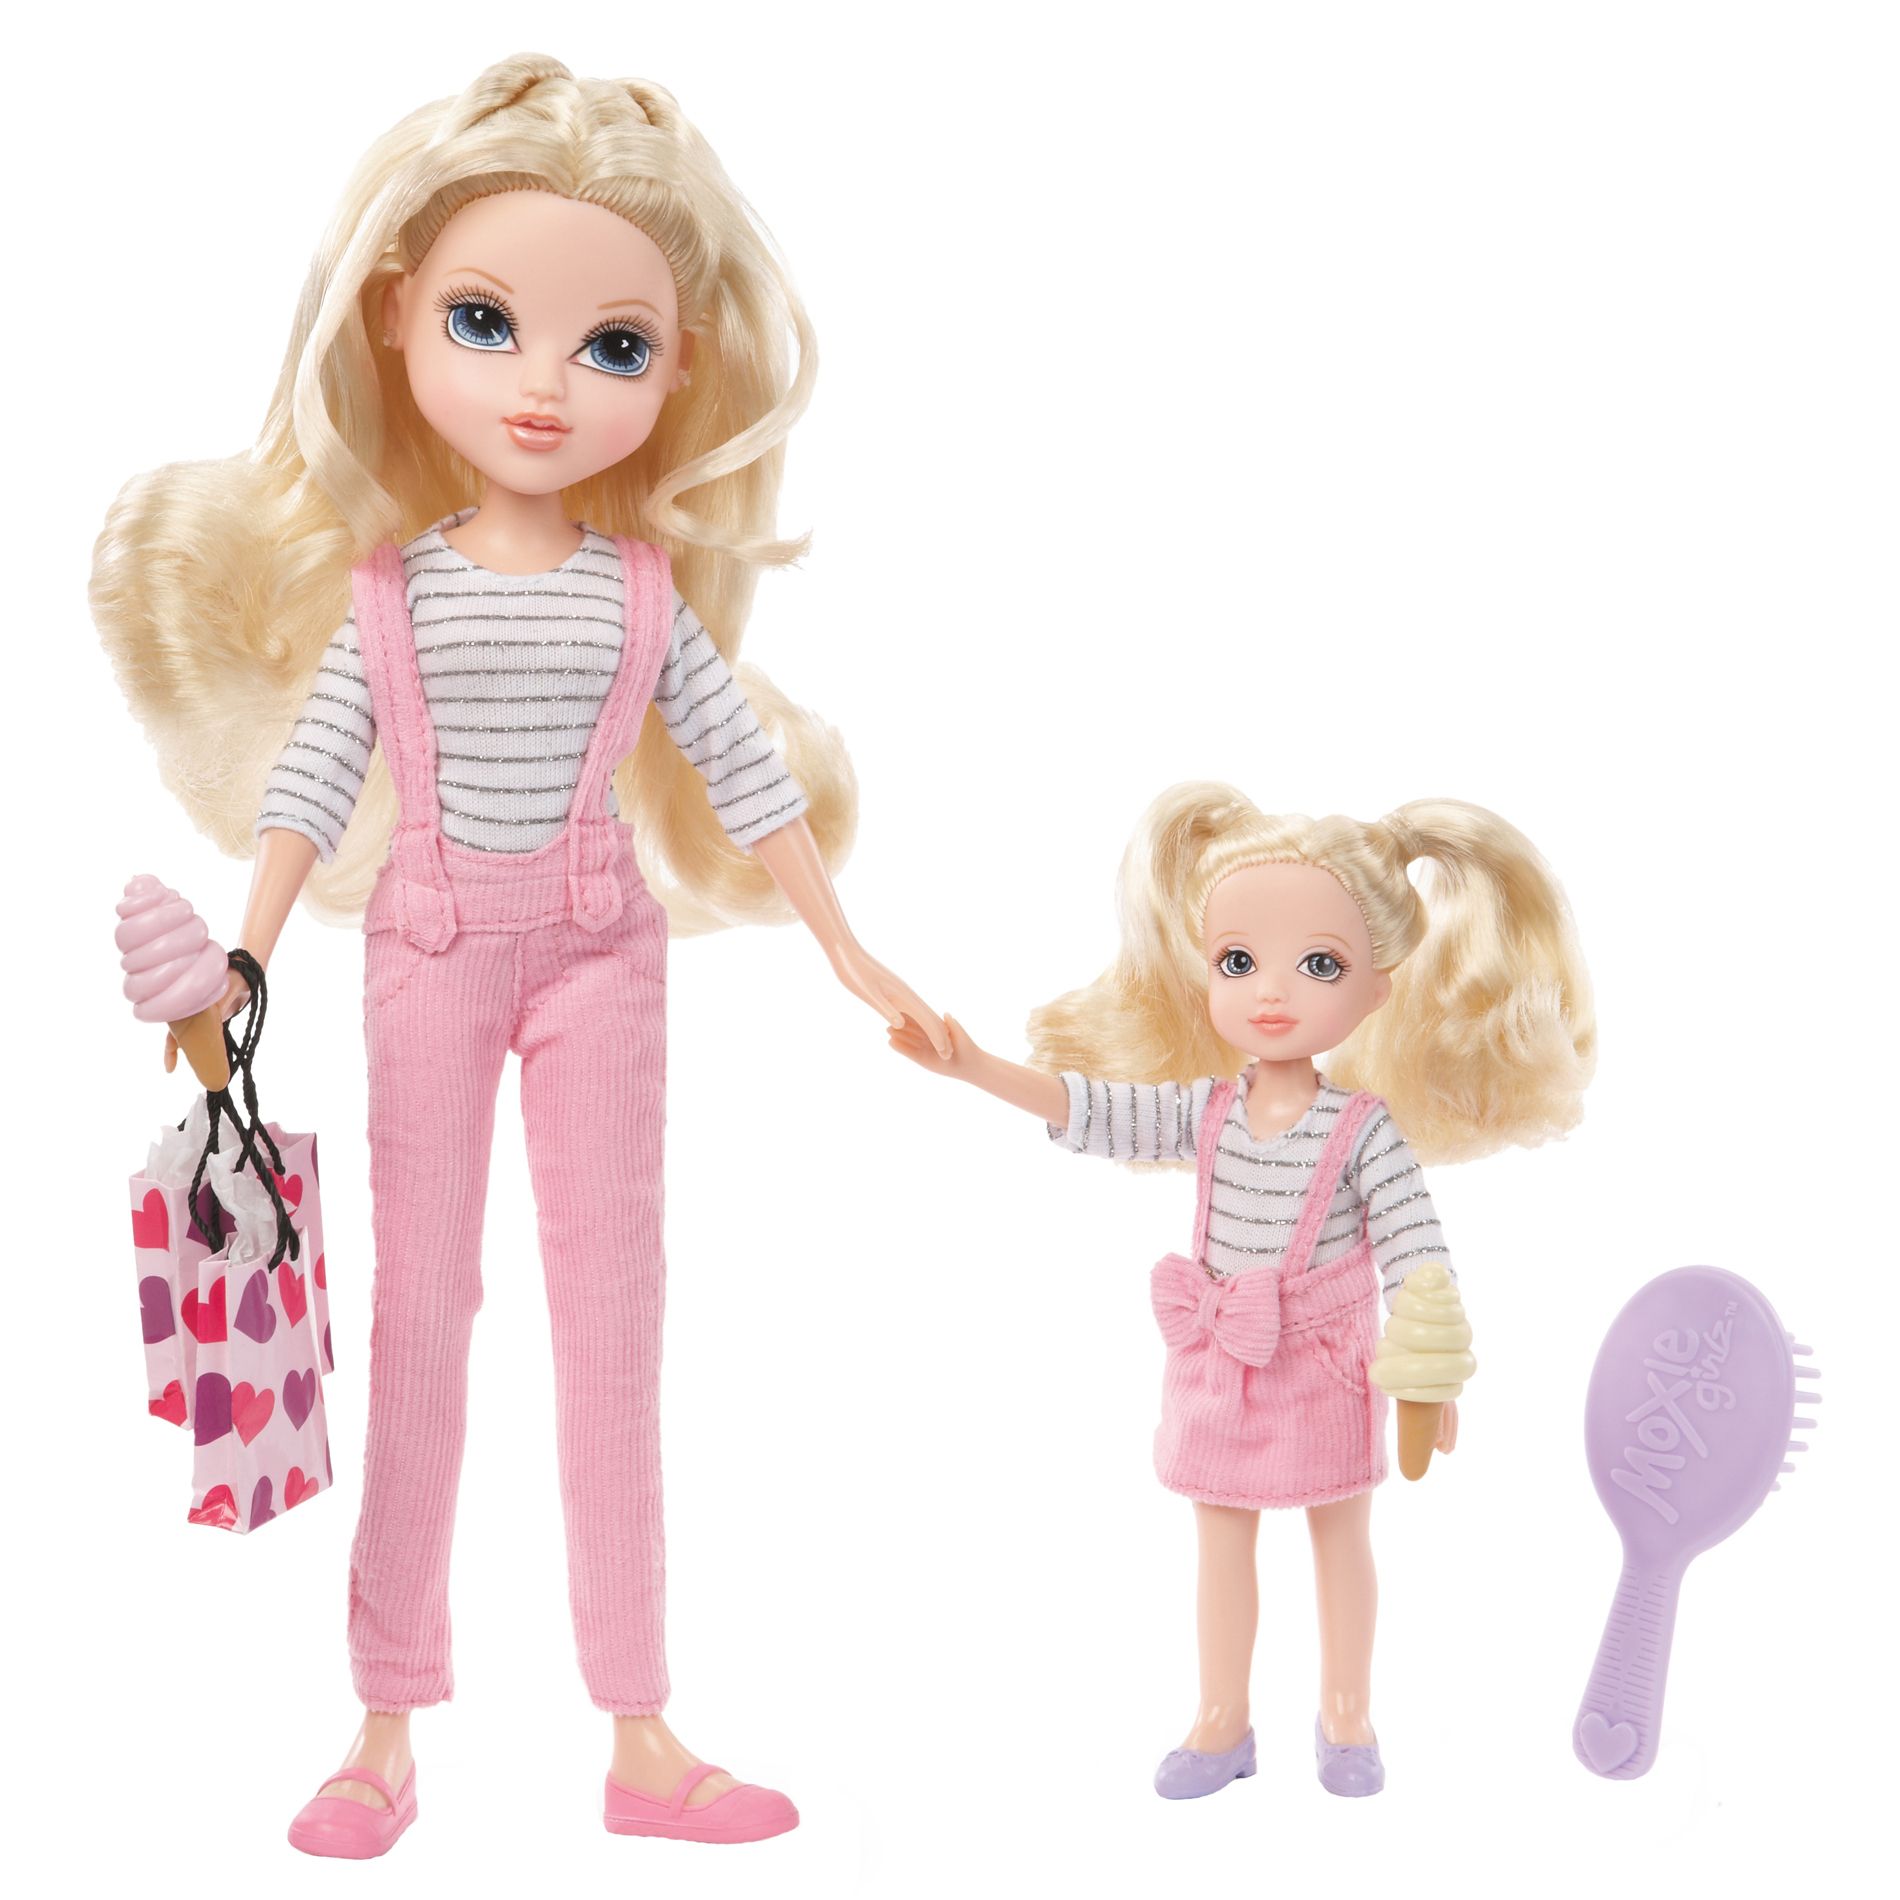 Купить игрушку сестре. Мокси куклы. Куклы Мокси Эйвери. Мокси Эйвери розовая. Кукла MOXIE малышка.